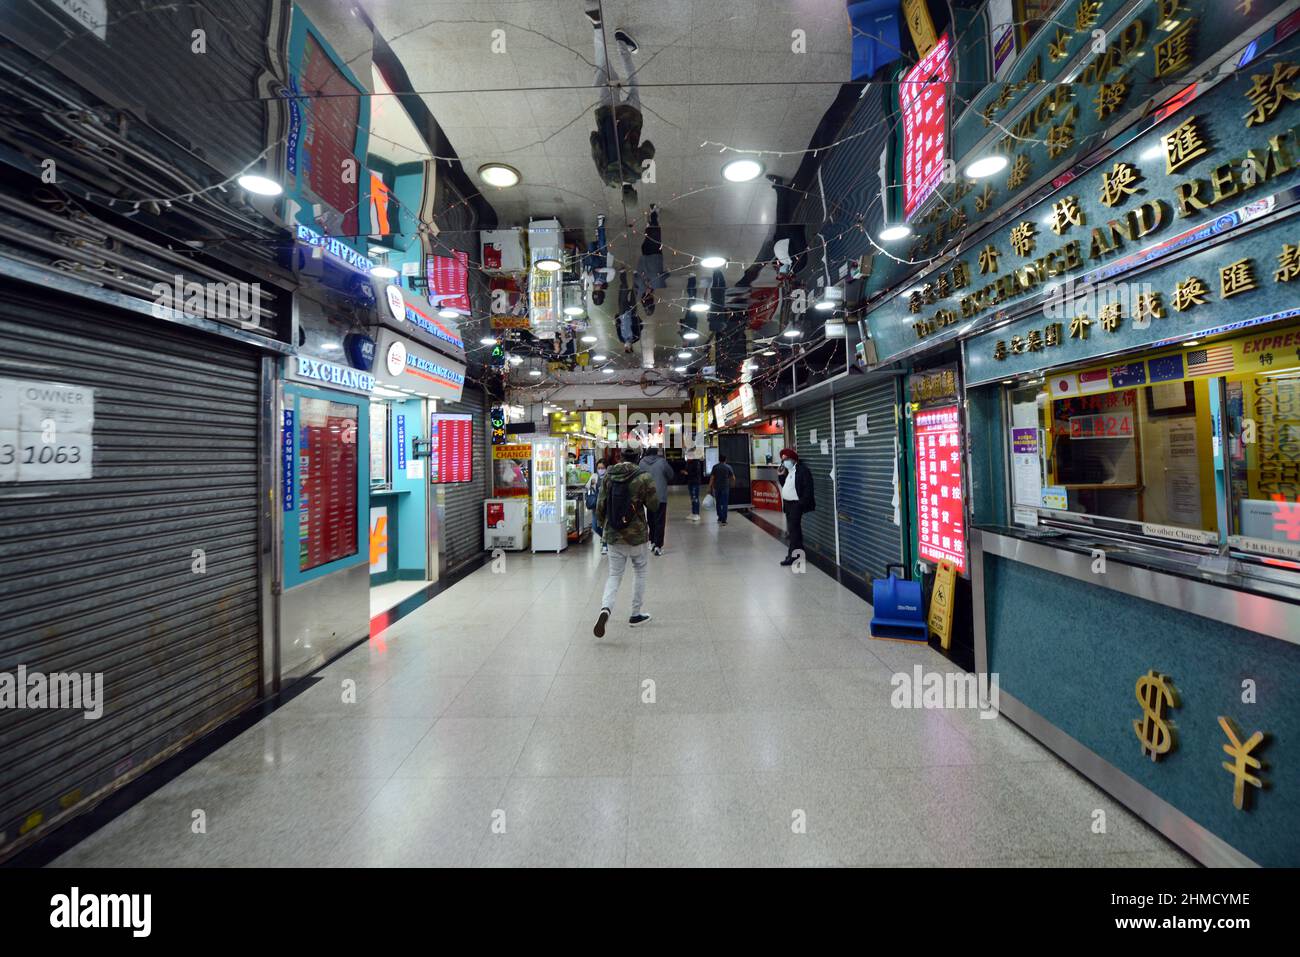 De nombreux magasins fermés dans le centre autrefois animé de Chungking Mansions à Tsim Sha Tsui, Kowloon, Hong Kong. Banque D'Images